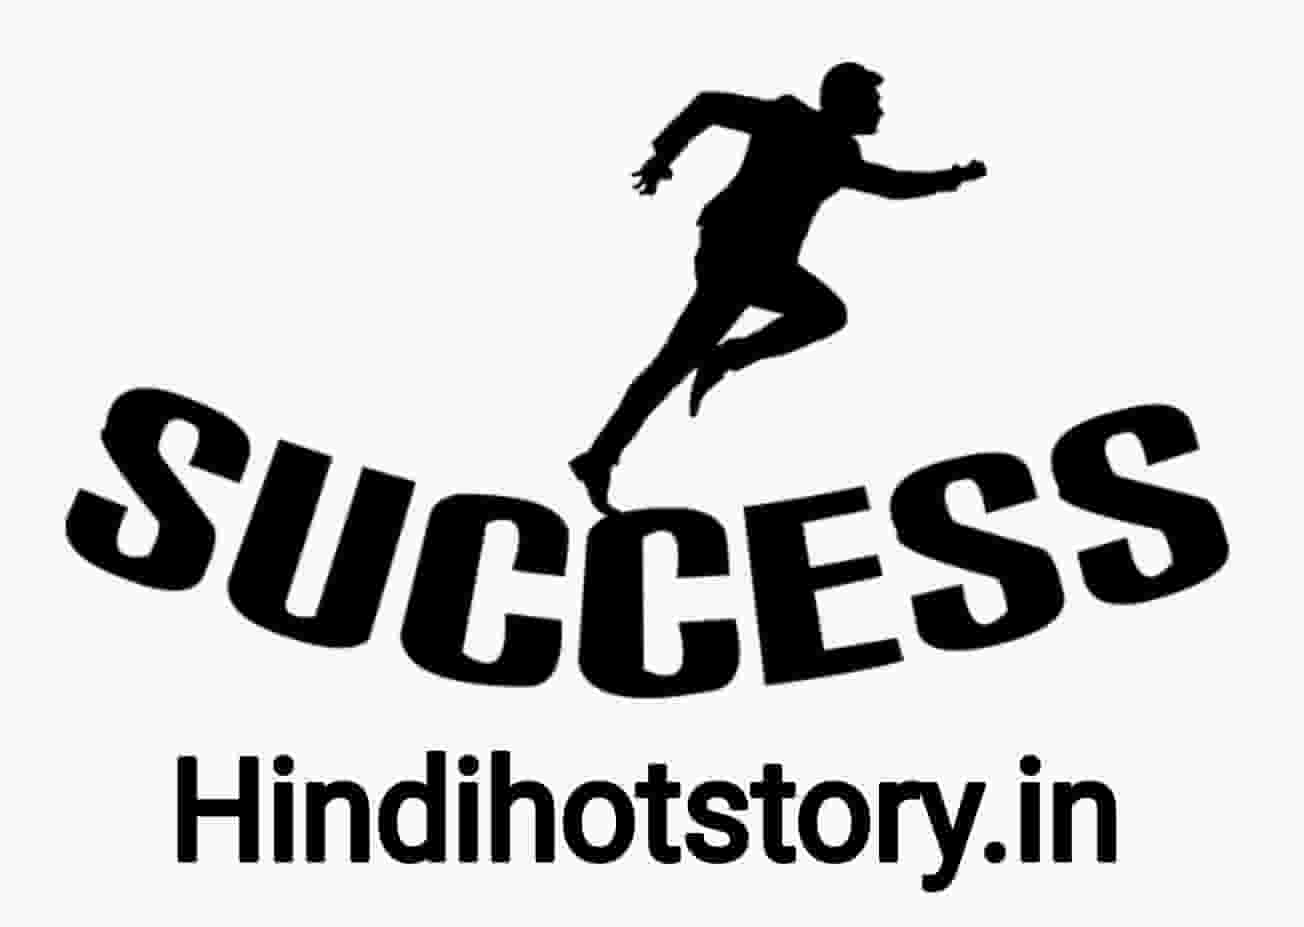 1304px x 927px - à¤œà¥€à¤µà¤¨ à¤®à¥‡à¤‚ à¤¸à¤«à¤²à¤¤à¤¾ à¤ªà¥à¤°à¤¾à¤ªà¥à¤¤ à¤•à¤°à¤¨à¥‡ à¤•à¥‡ à¤²à¤¿à¤ à¤¸à¤¬à¤¸à¥‡ à¤®à¤¹à¤¤à¥à¤µà¤ªà¥‚à¤°à¥à¤£ à¤•à¥à¤¯à¤¾ à¤¹à¥ˆ (how to be  successful in life) Success in life in Hindi - desi kahani